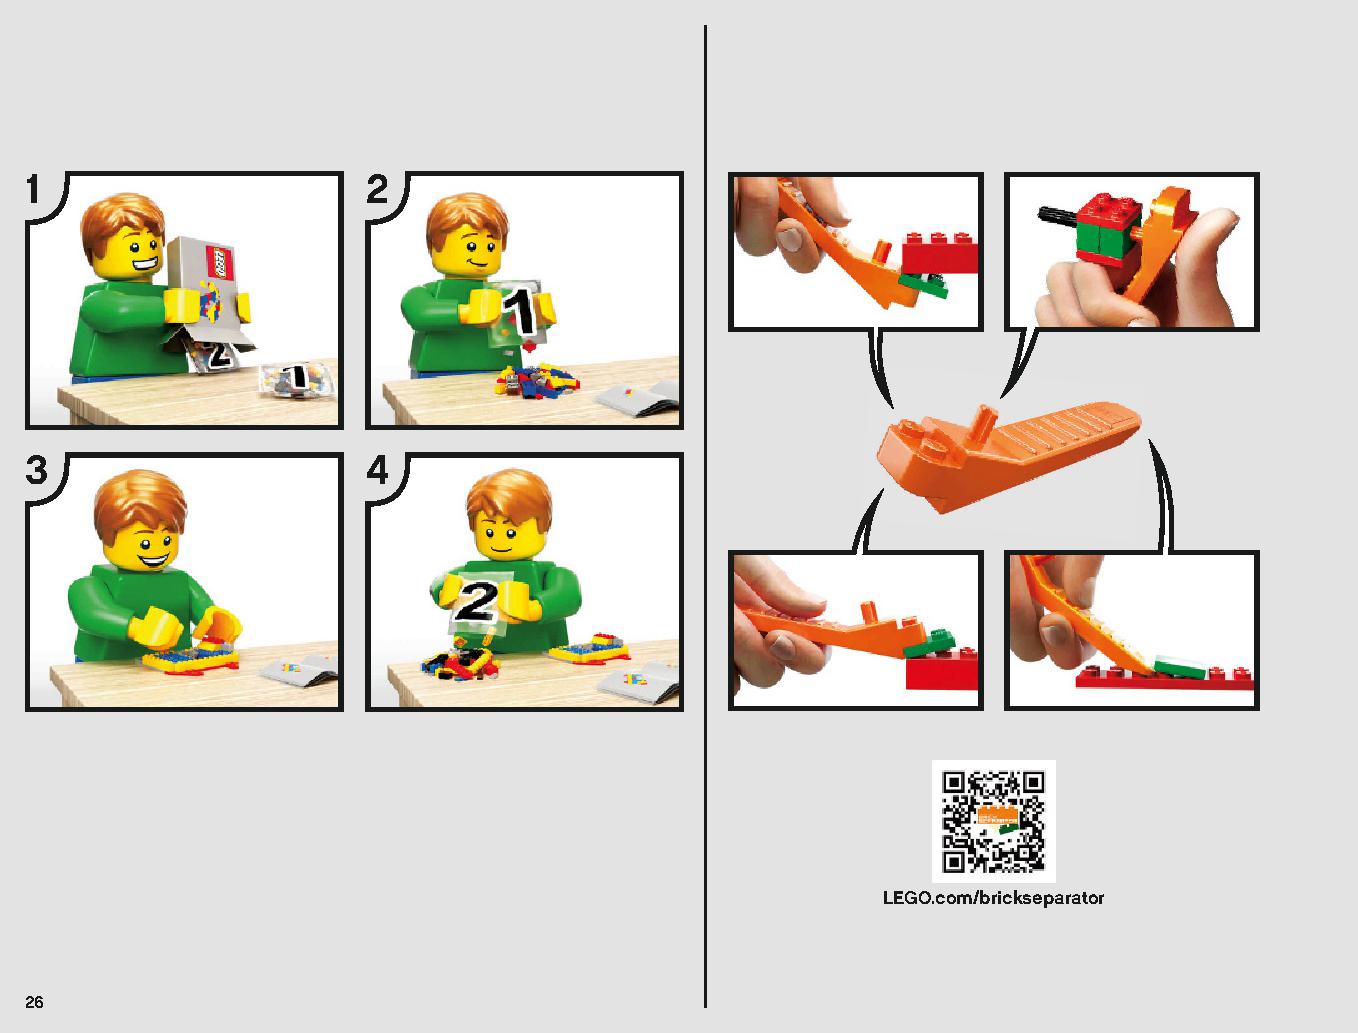 クラウド・シティ 75222 レゴの商品情報 レゴの説明書・組立方法 26 page